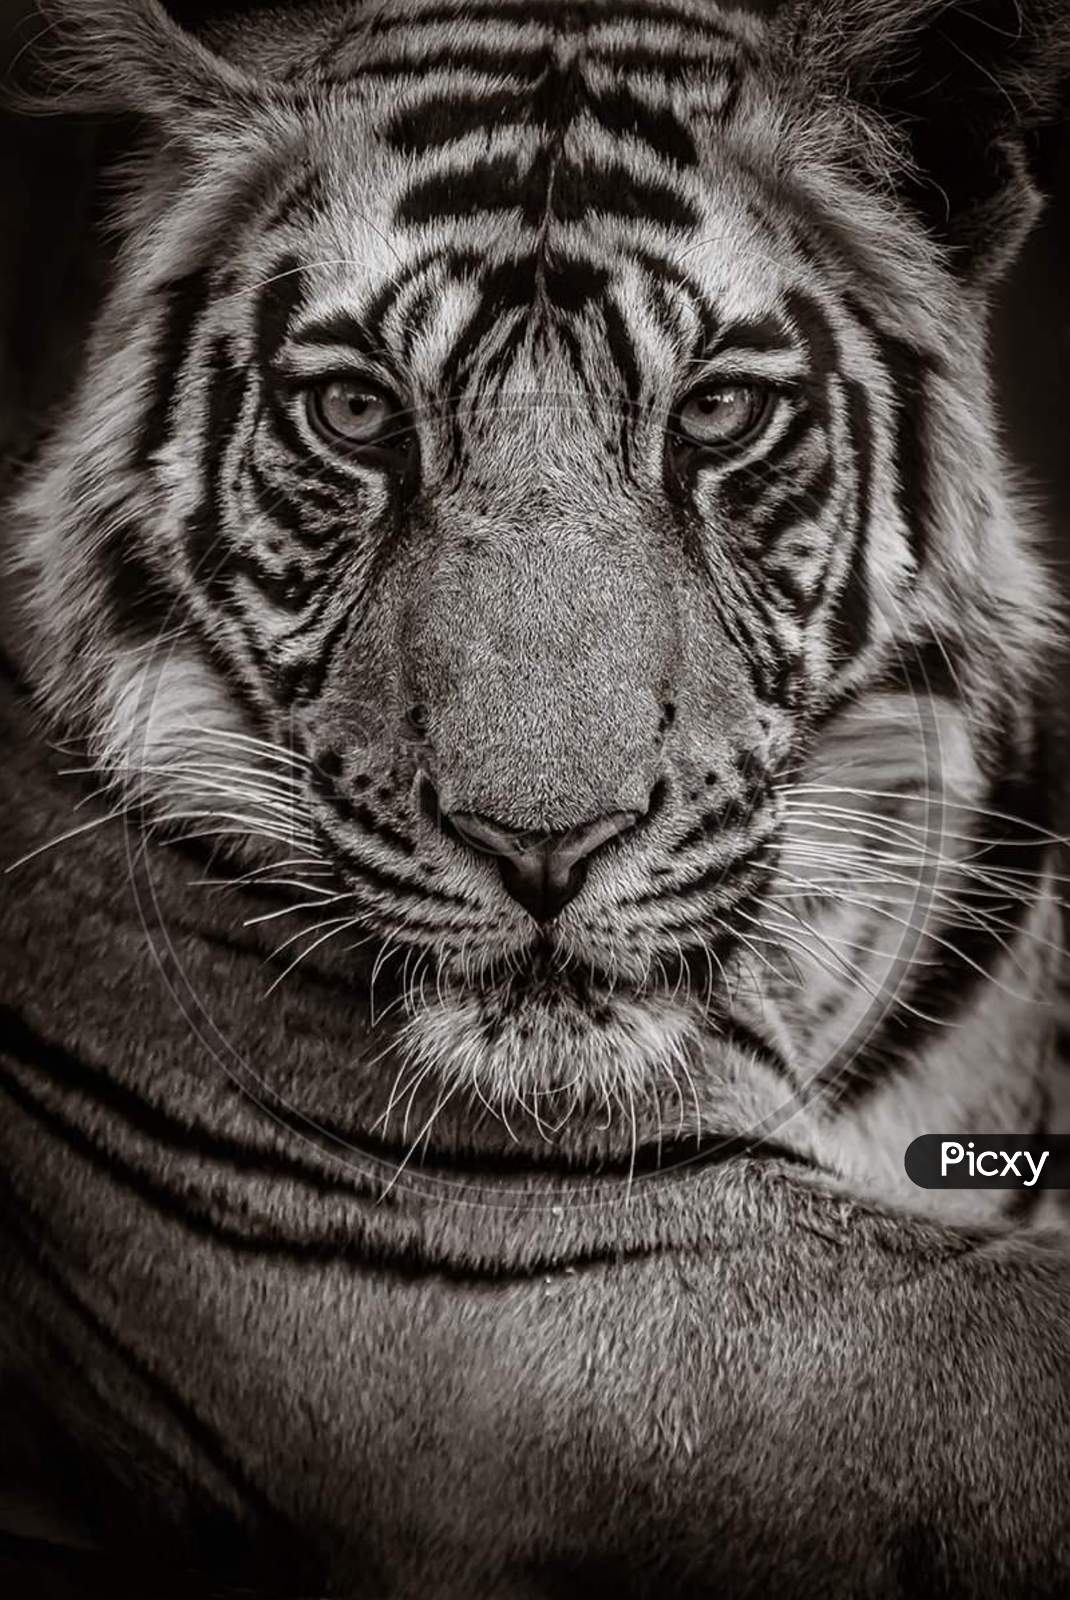 Face of a bengal tiger